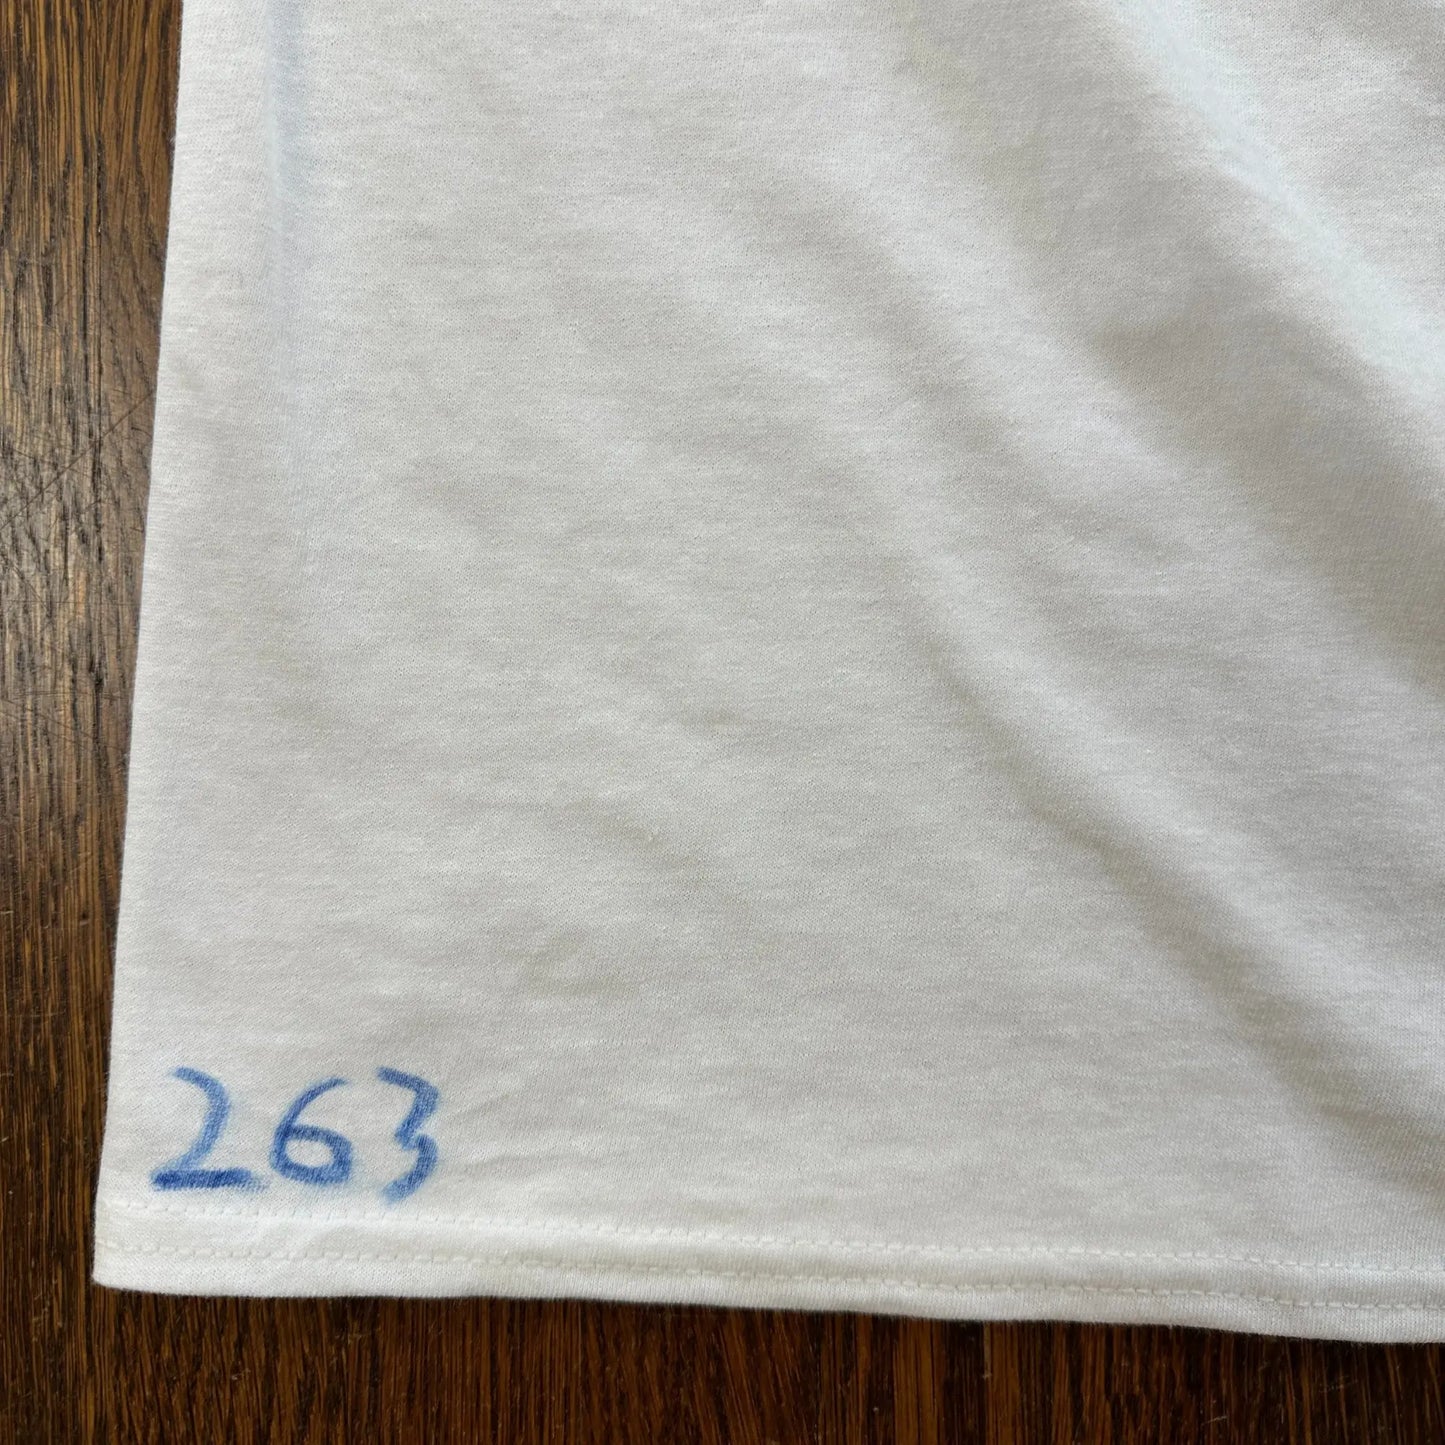 Buy Dylan's T-Shirt Club $100 Bill T-Shirt - White | T-Shirtss at Woven Durham